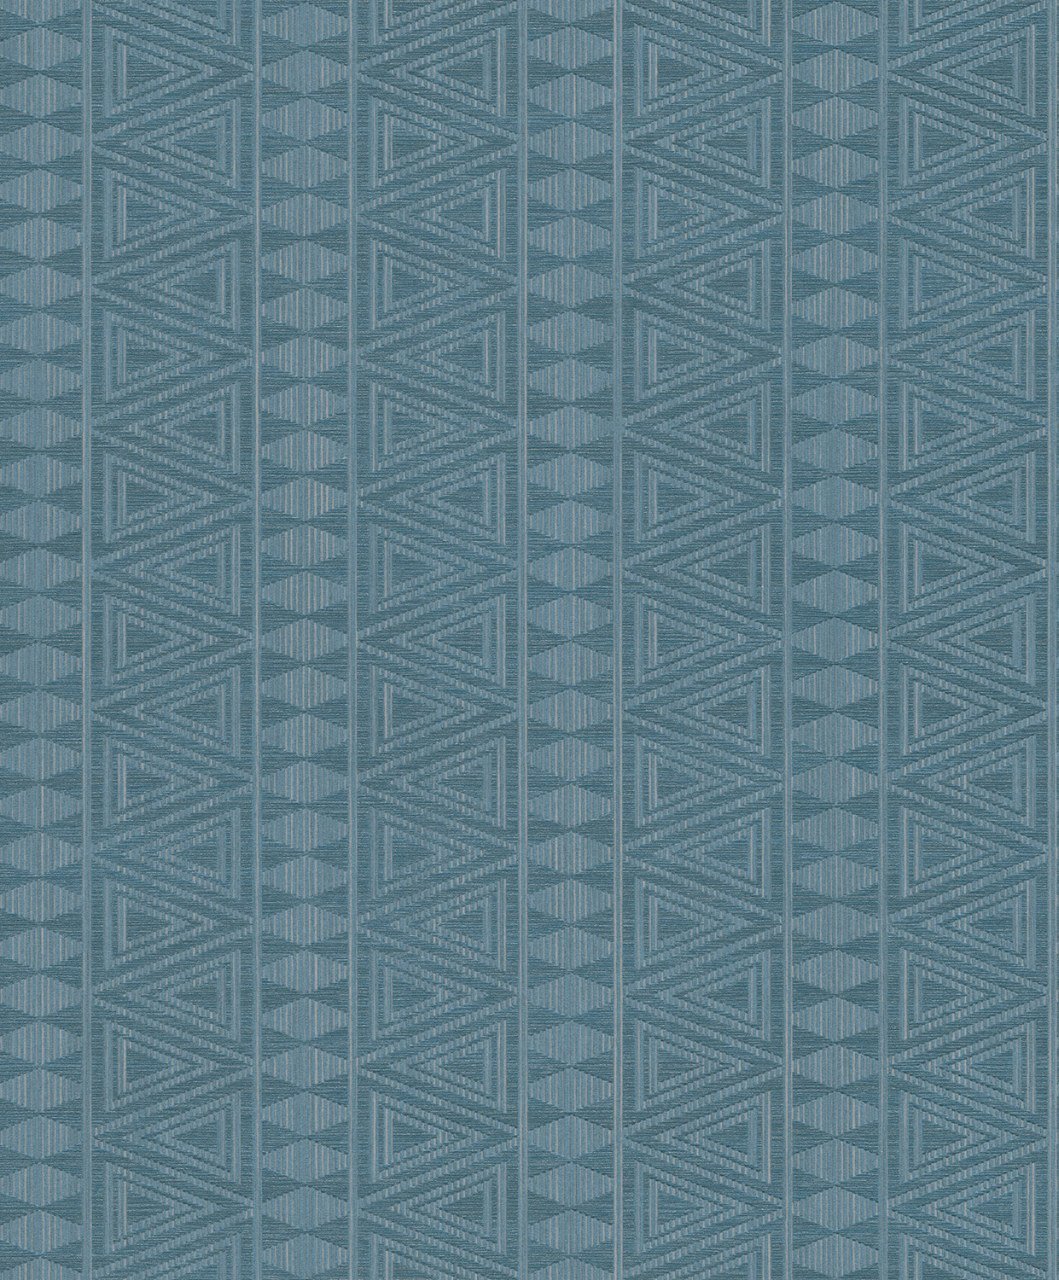 Gravity GT 2001-ithal-belçika-mavi-modelli-dokulu- kabartmalı-Non woven tabanlı-(Rulo:5,3m2